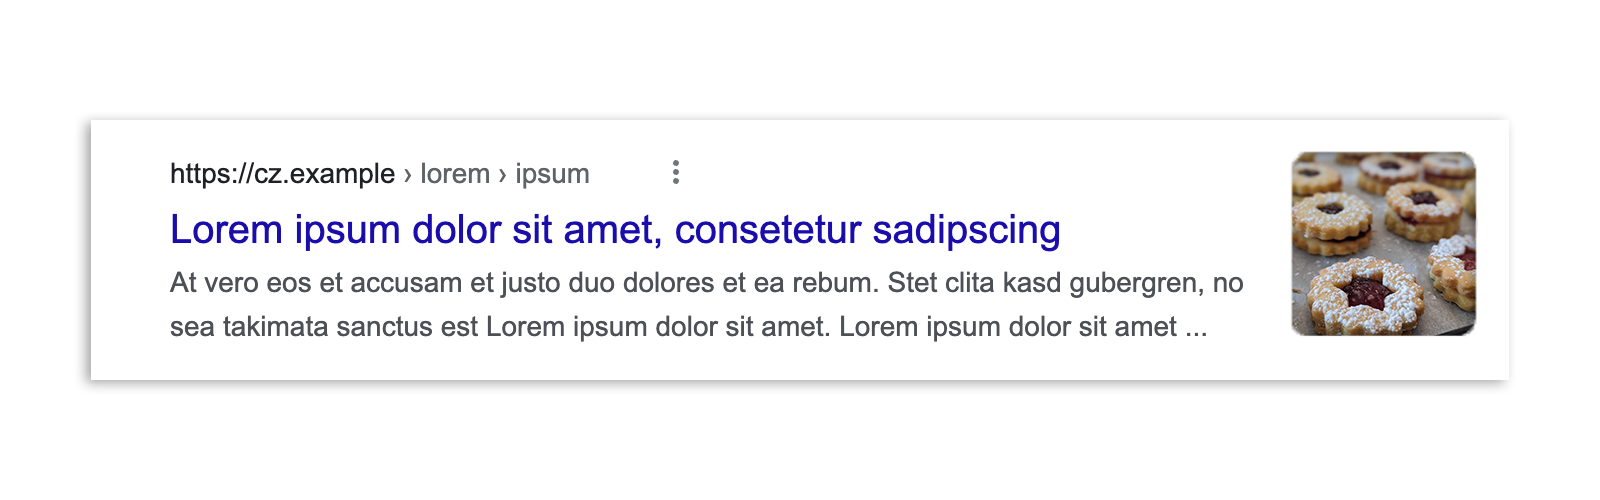 Hasil Google Penelusuran di Ceko sebelum hukum tersebut diberlakukan, yang menampilkan cuplikan artikel, pratinjau gambar, judul, dan URL.